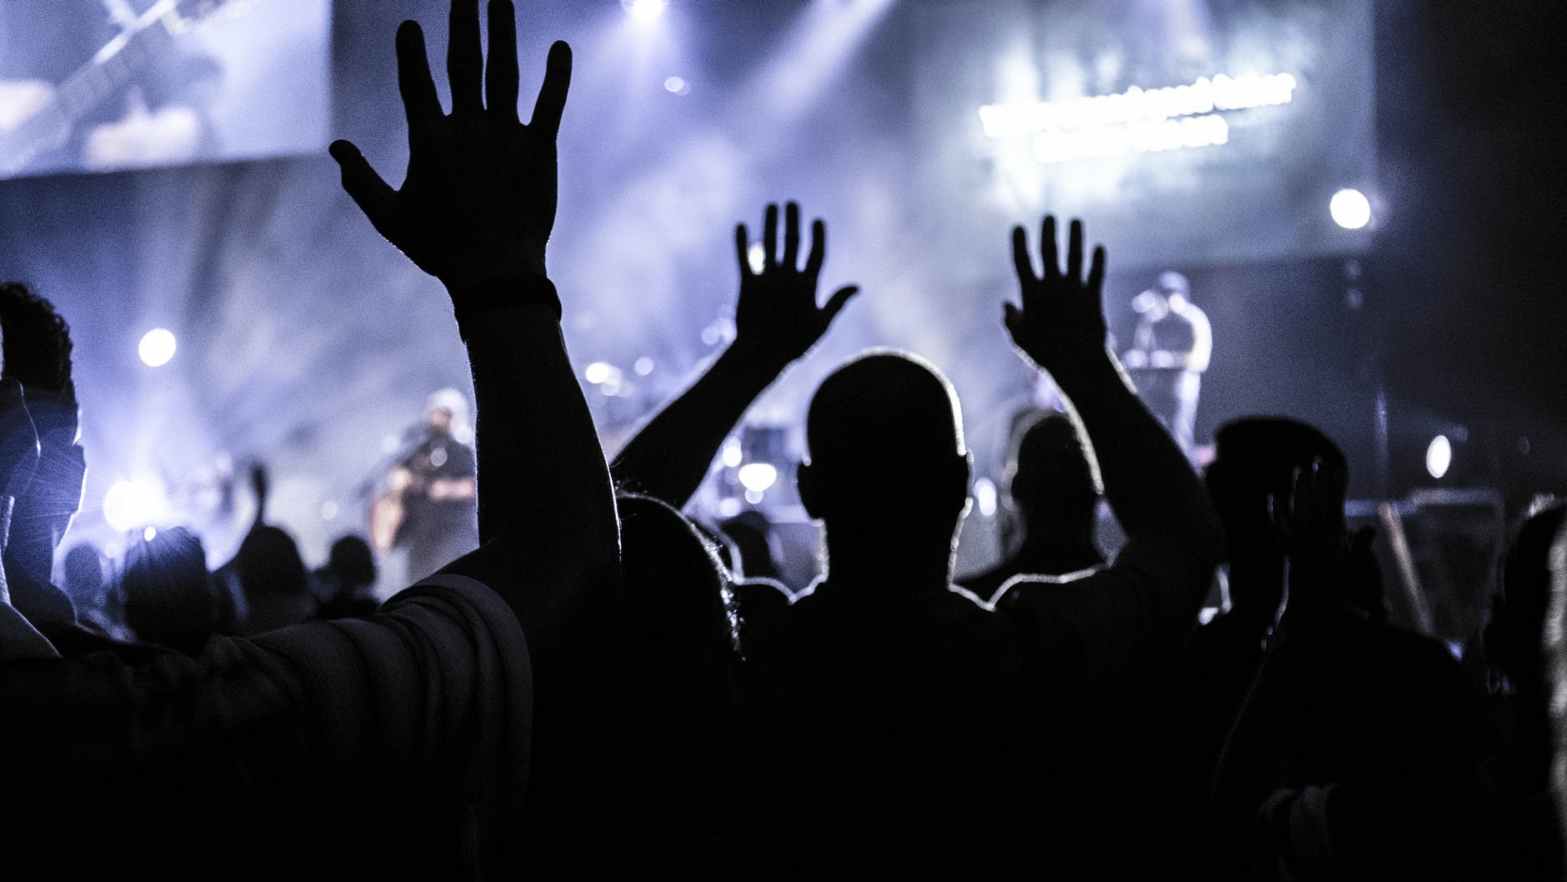 Aug. 21. Gathering: God doesn’t need worship